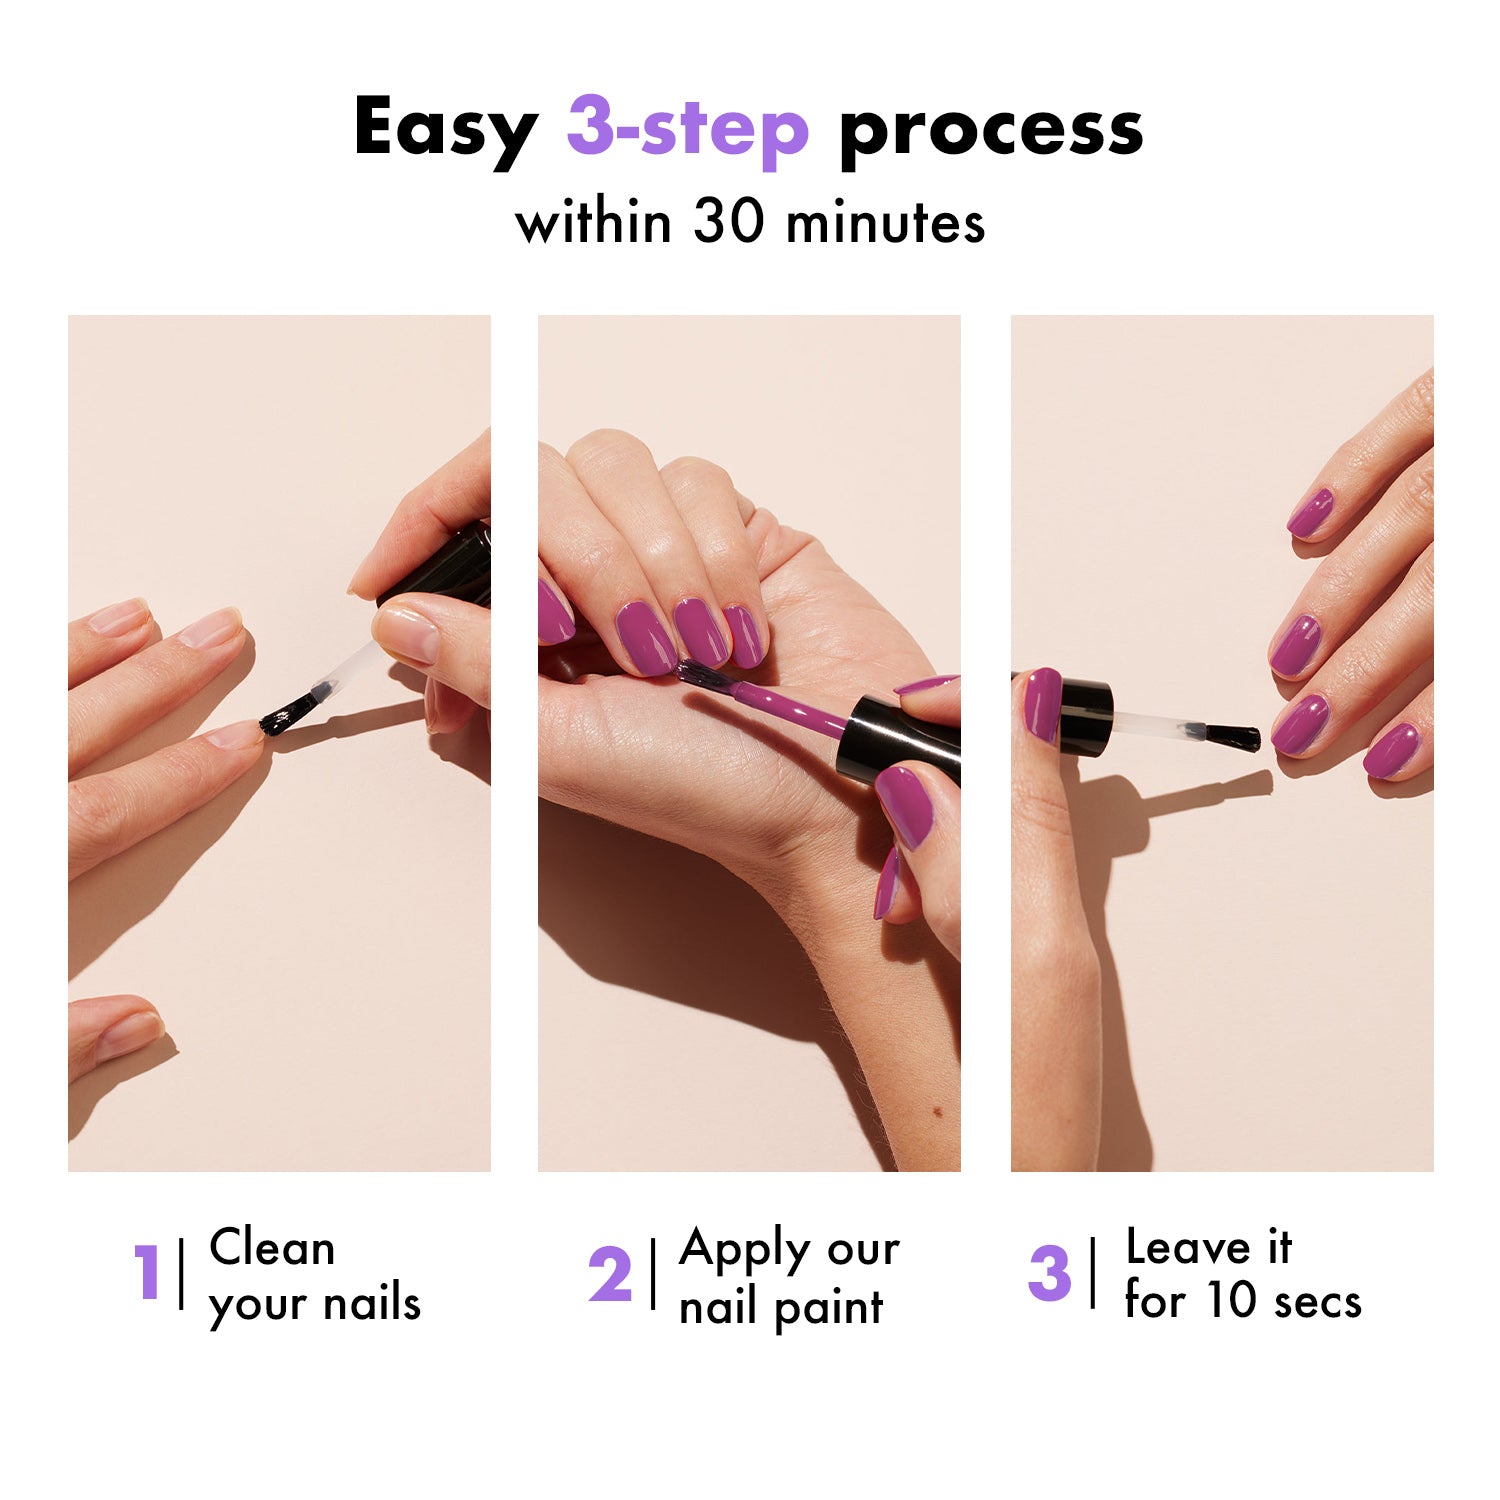 How to apply nail polish neatly - Quora